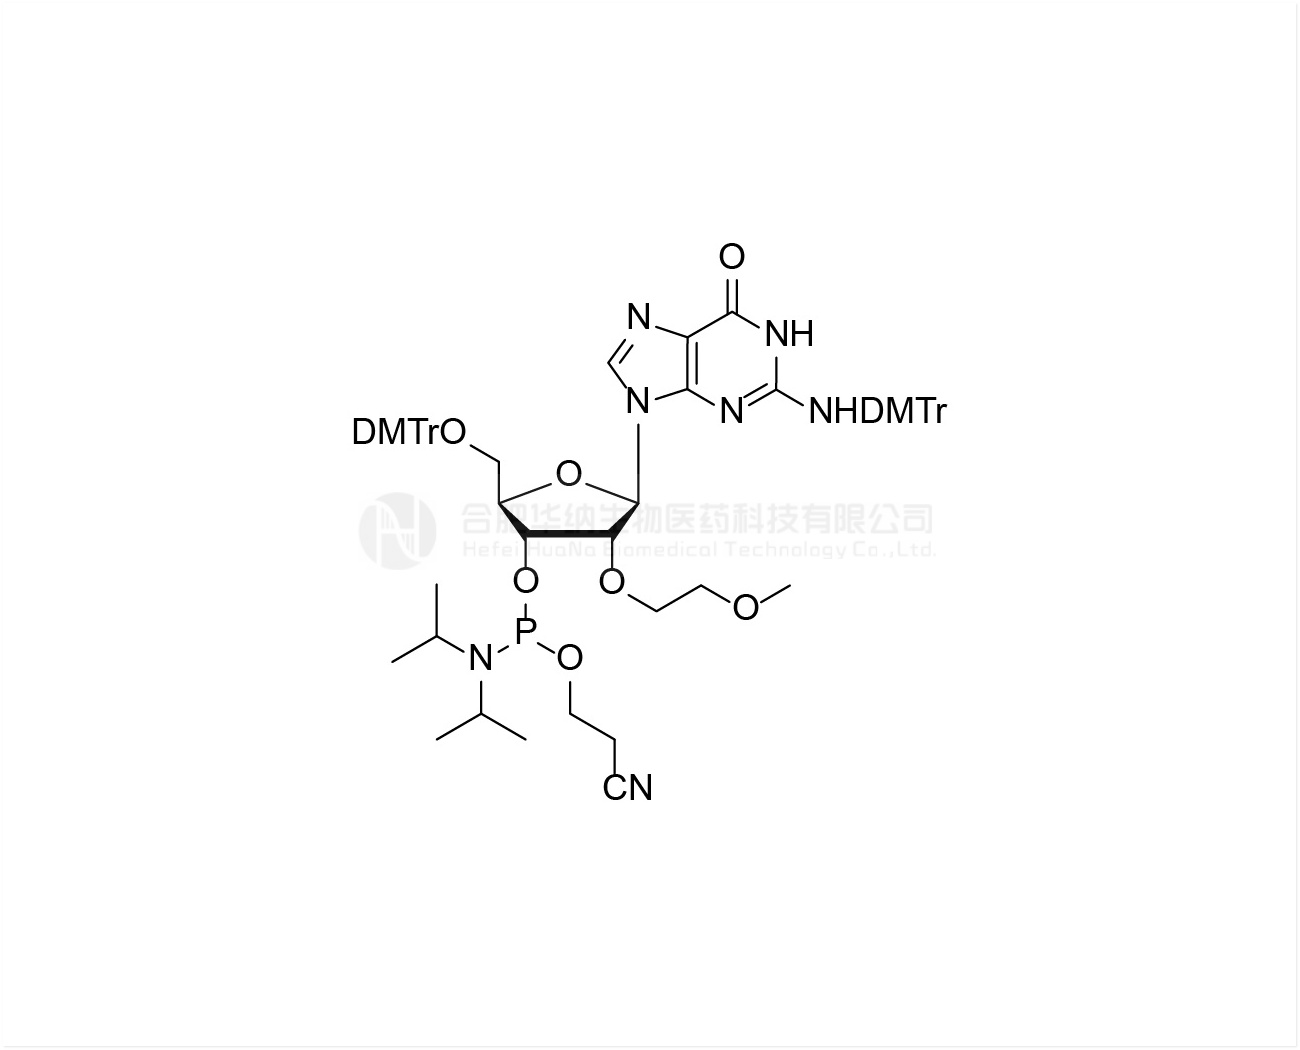 DMTr-2'-O-MOE-rG(DMTr)-3'-CE-Phosphoramidite